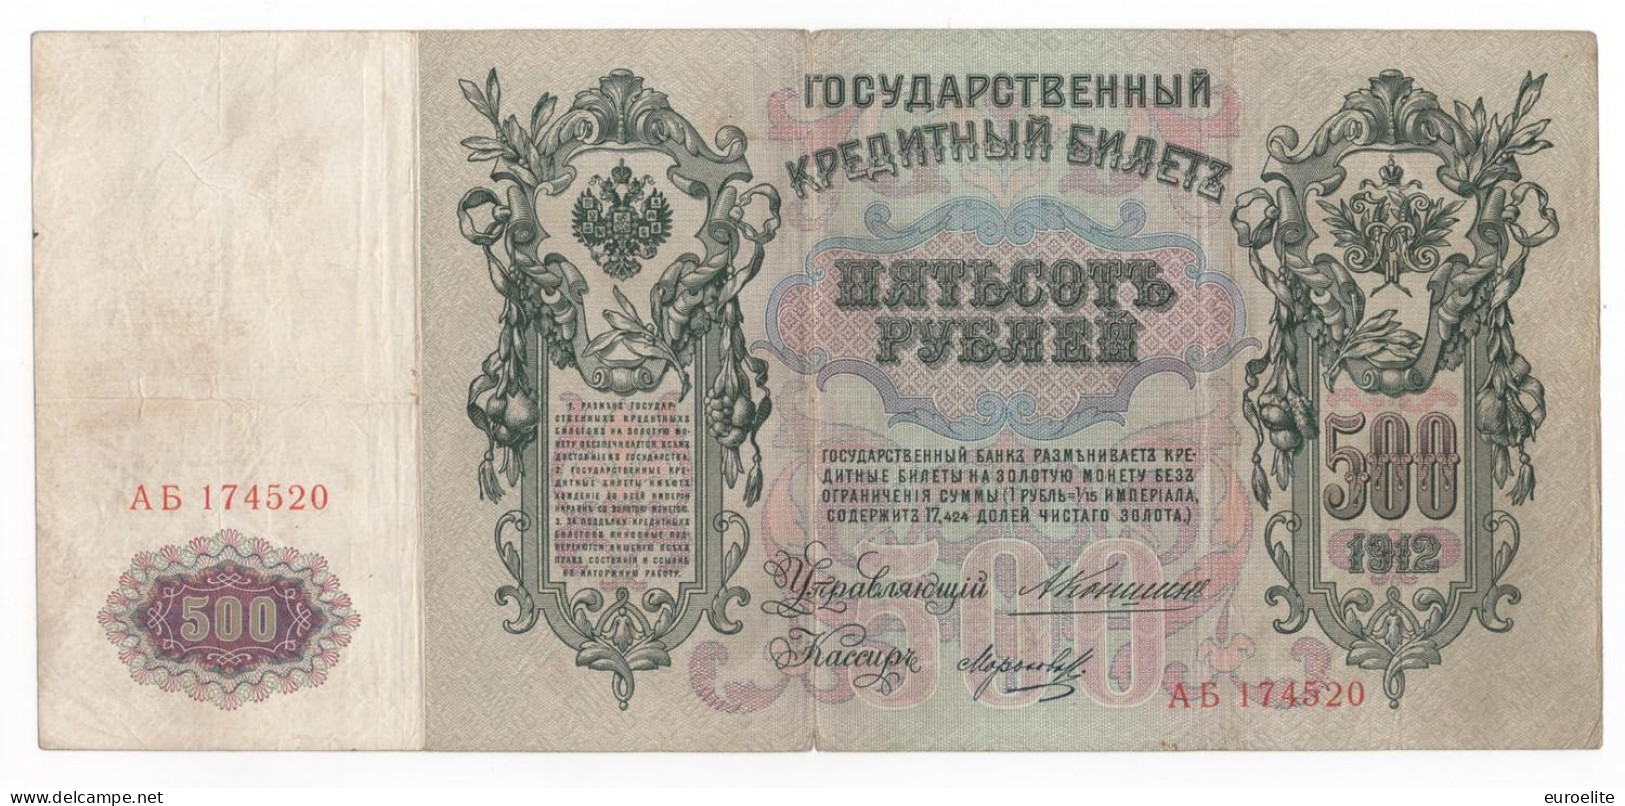 Russia - Impero Russo (1721-1917) - 500 Rubli 1912 - Rusland